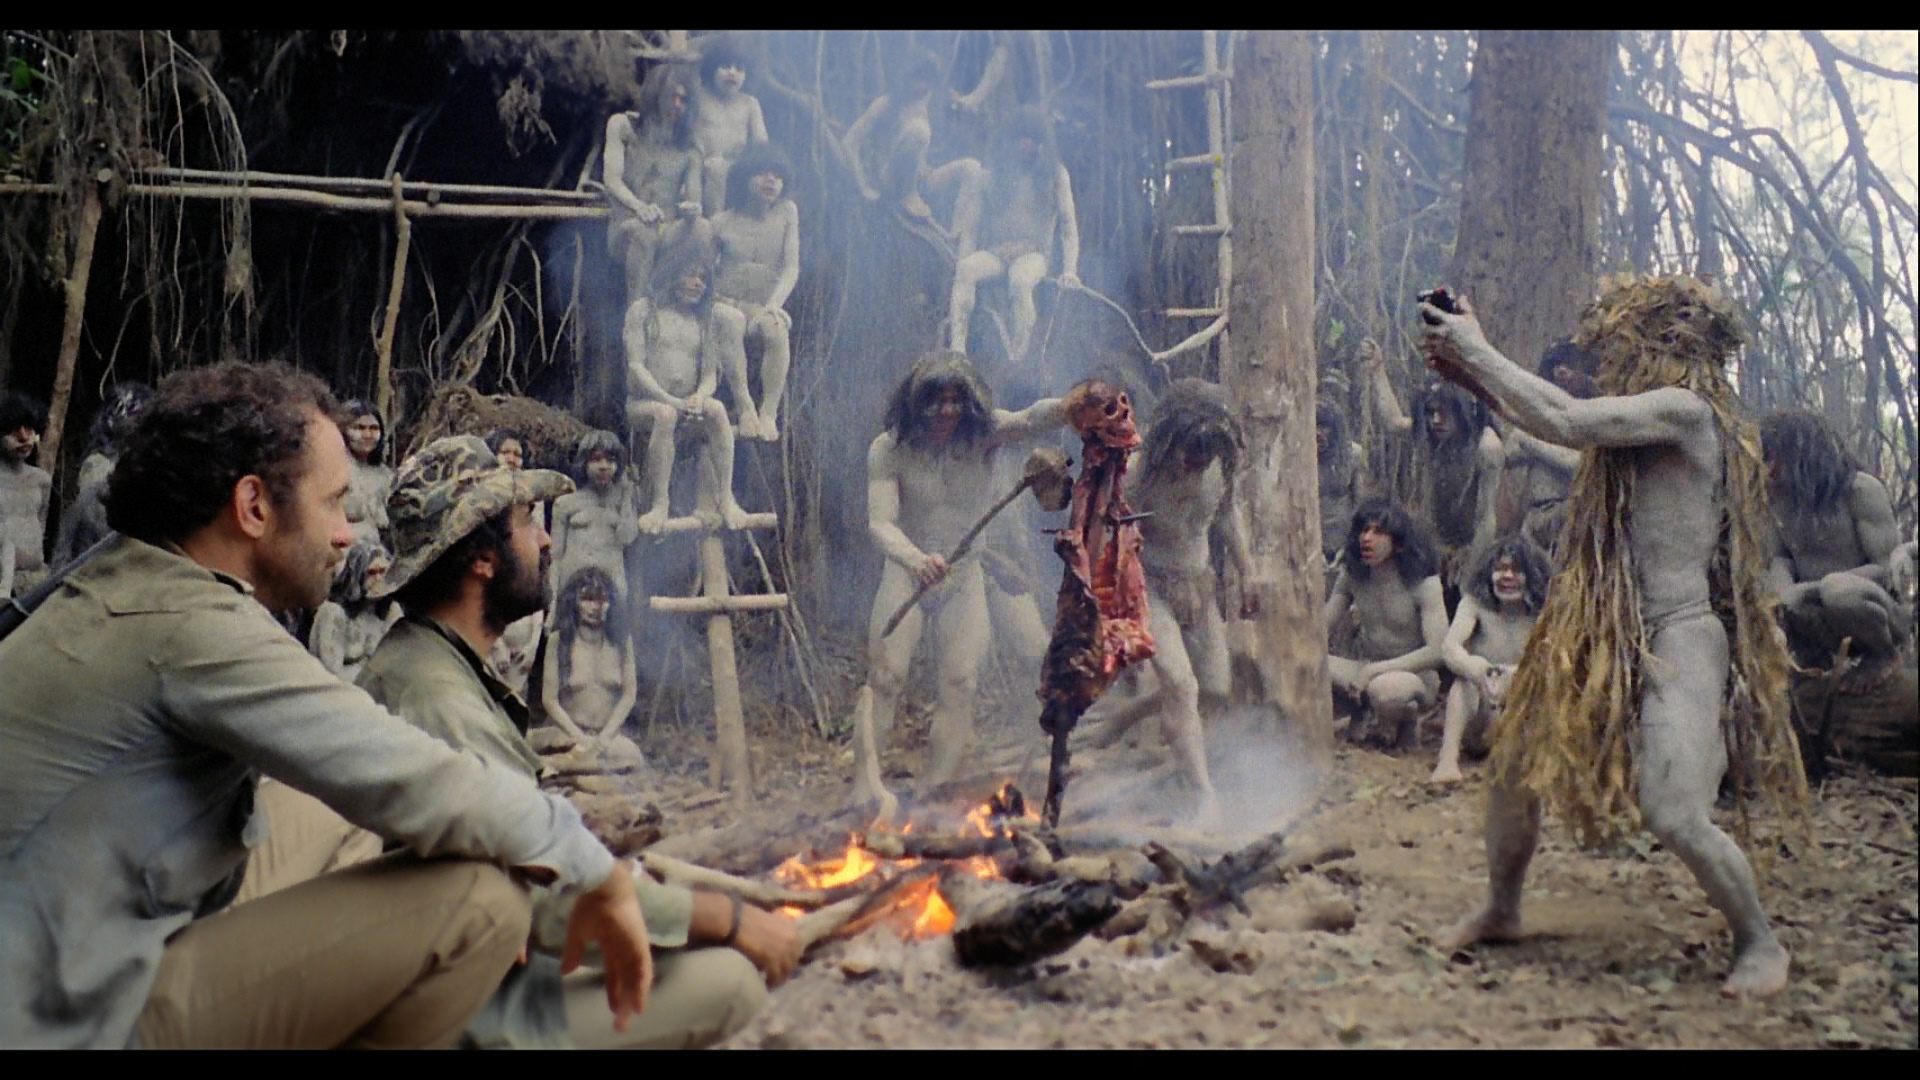 Para los cines las comunidades nativas son peores que los de Holocausto Canibal. Imagen: www.dvdbeaver.com.